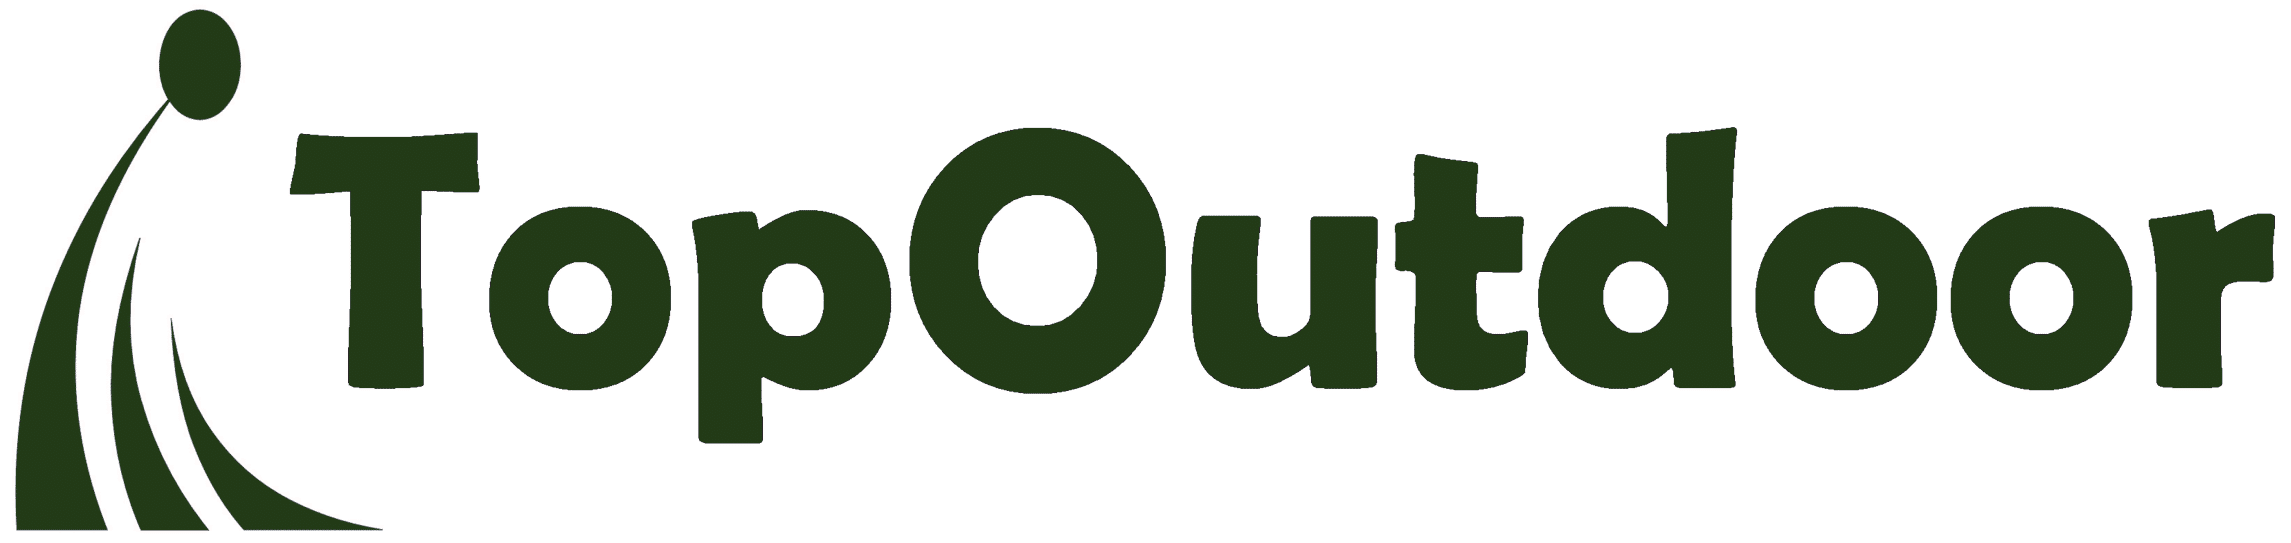 Topvirk Outdoor Logo Ny